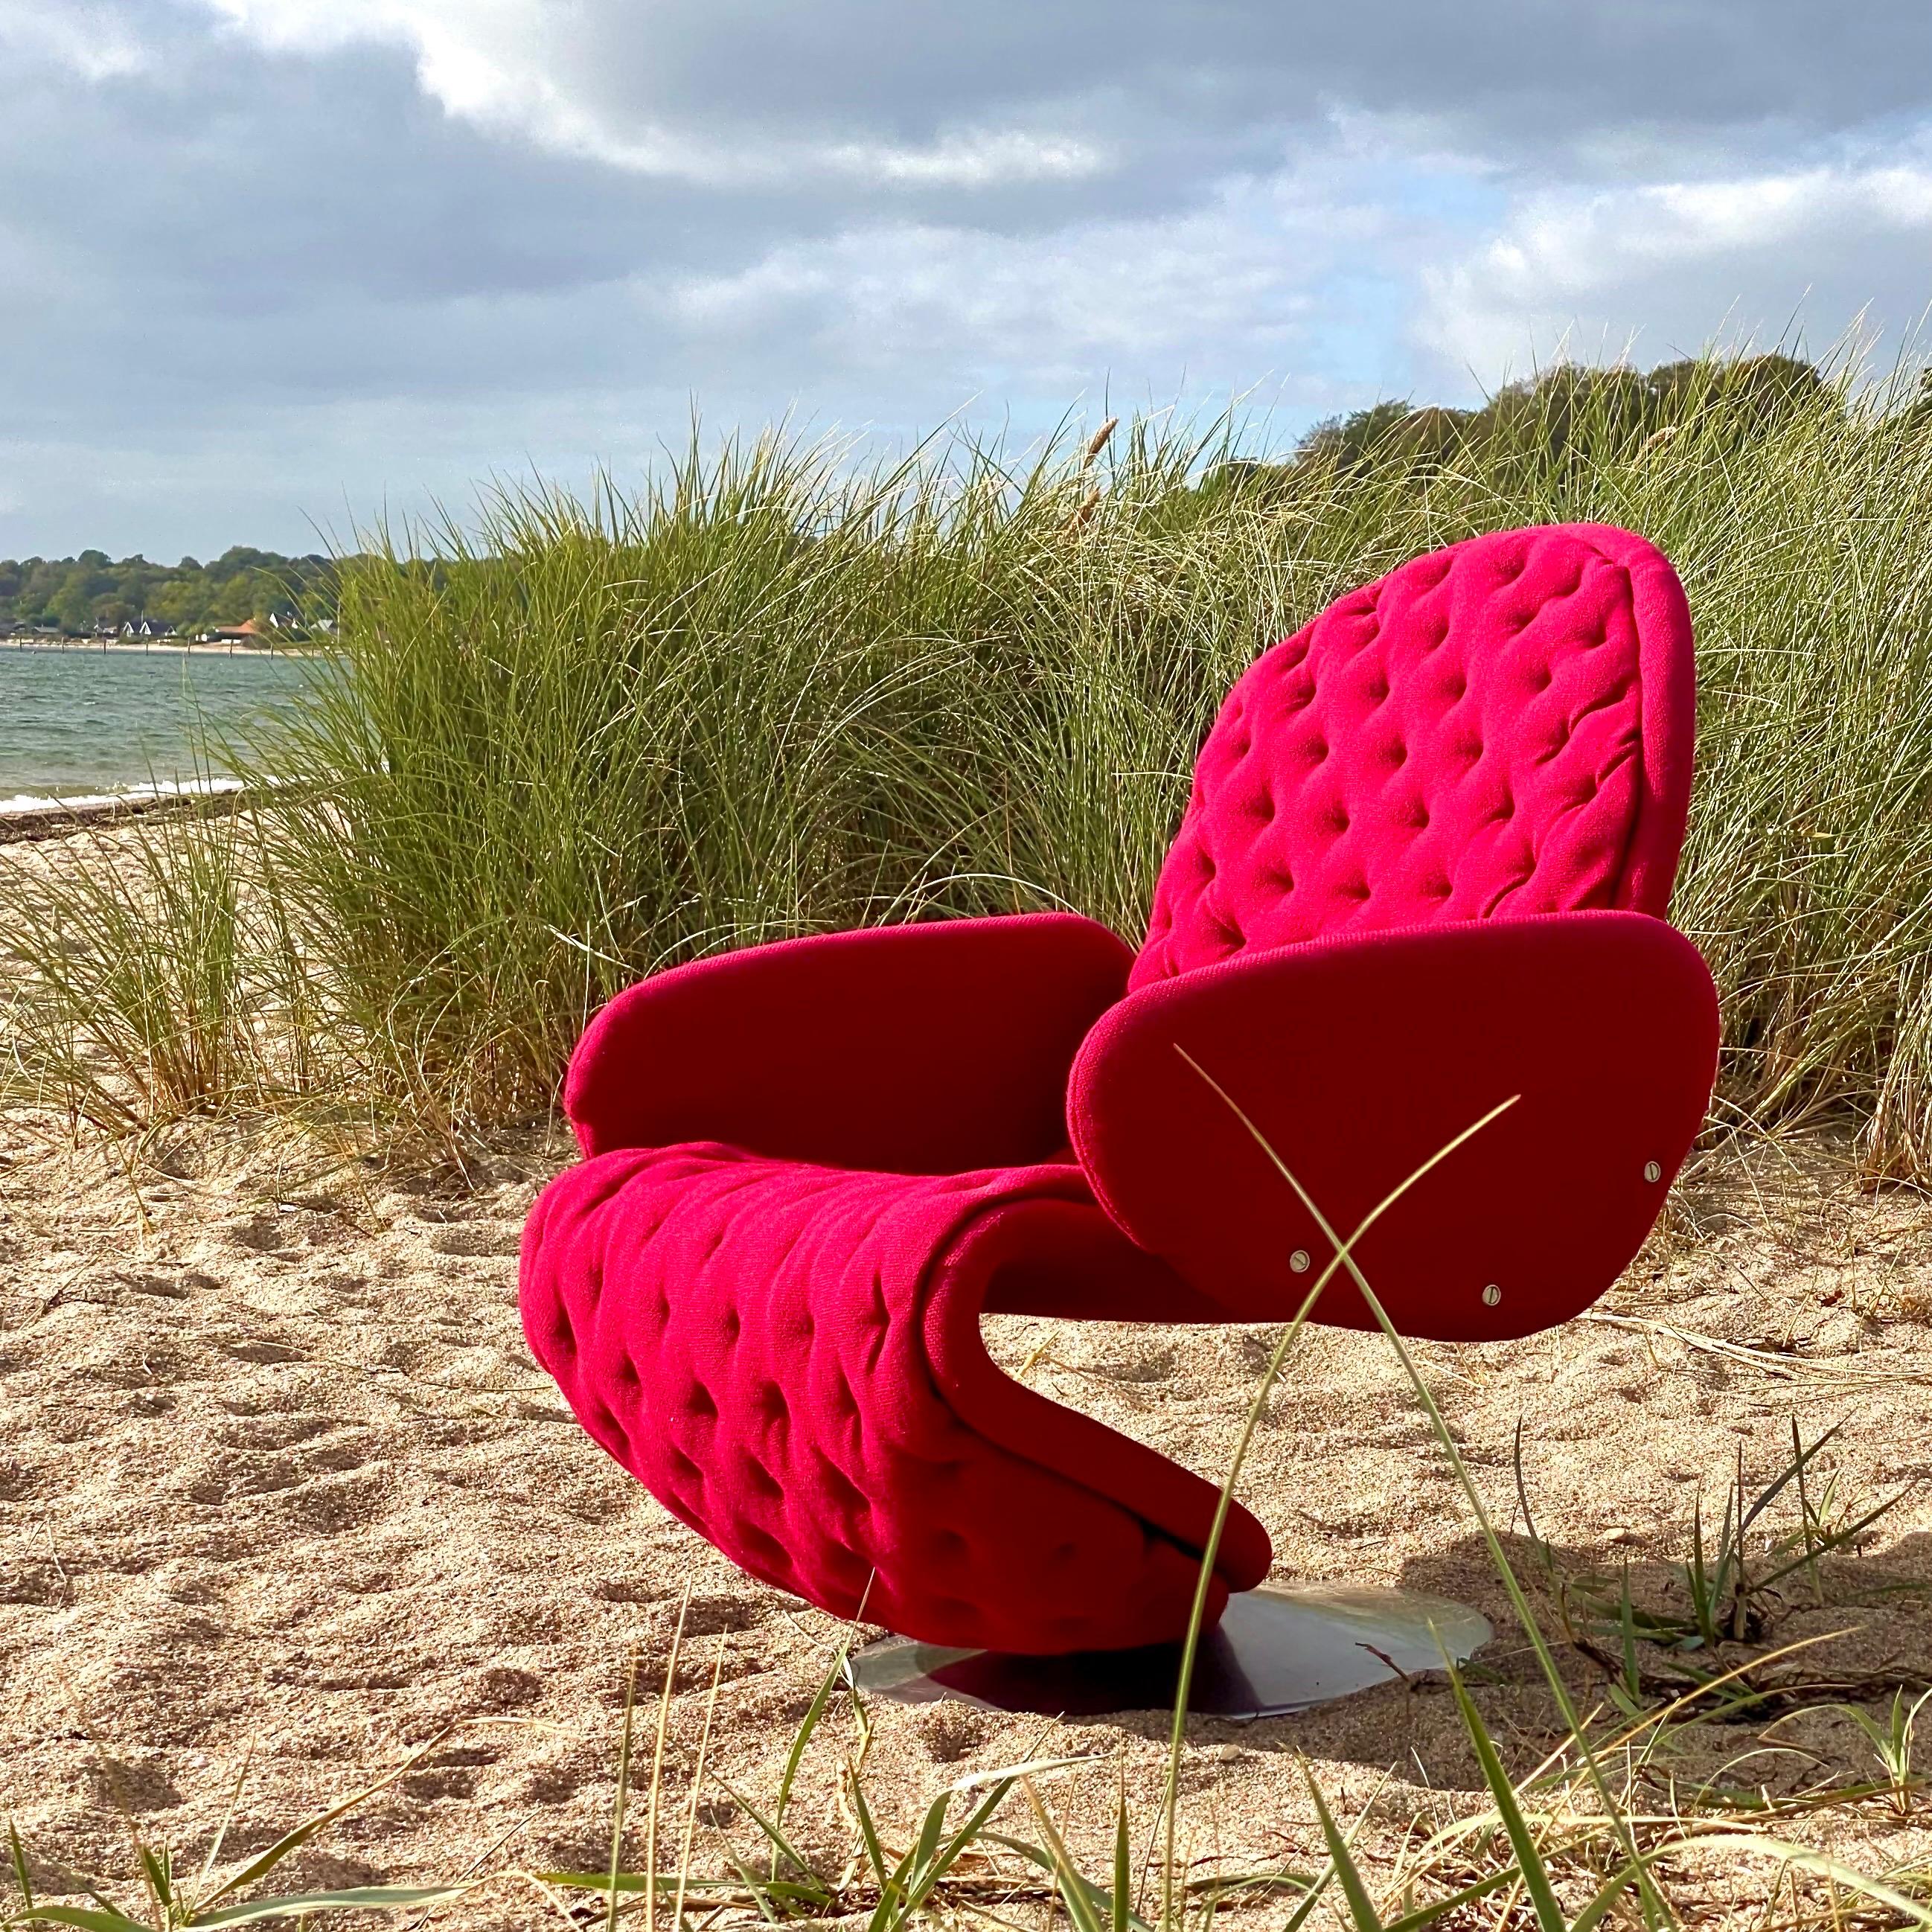 Chaise de luxe 1-2-3 de Condit en tissu de laine rouge de Kvadrat en bon état d'origine. La chaise date du début des années 1970. 

Ce modèle 1-2-3 deluxe possède les rares accoudoirs rembourrés.

Aucun problème structurel.

Dimensions : 80 cm de